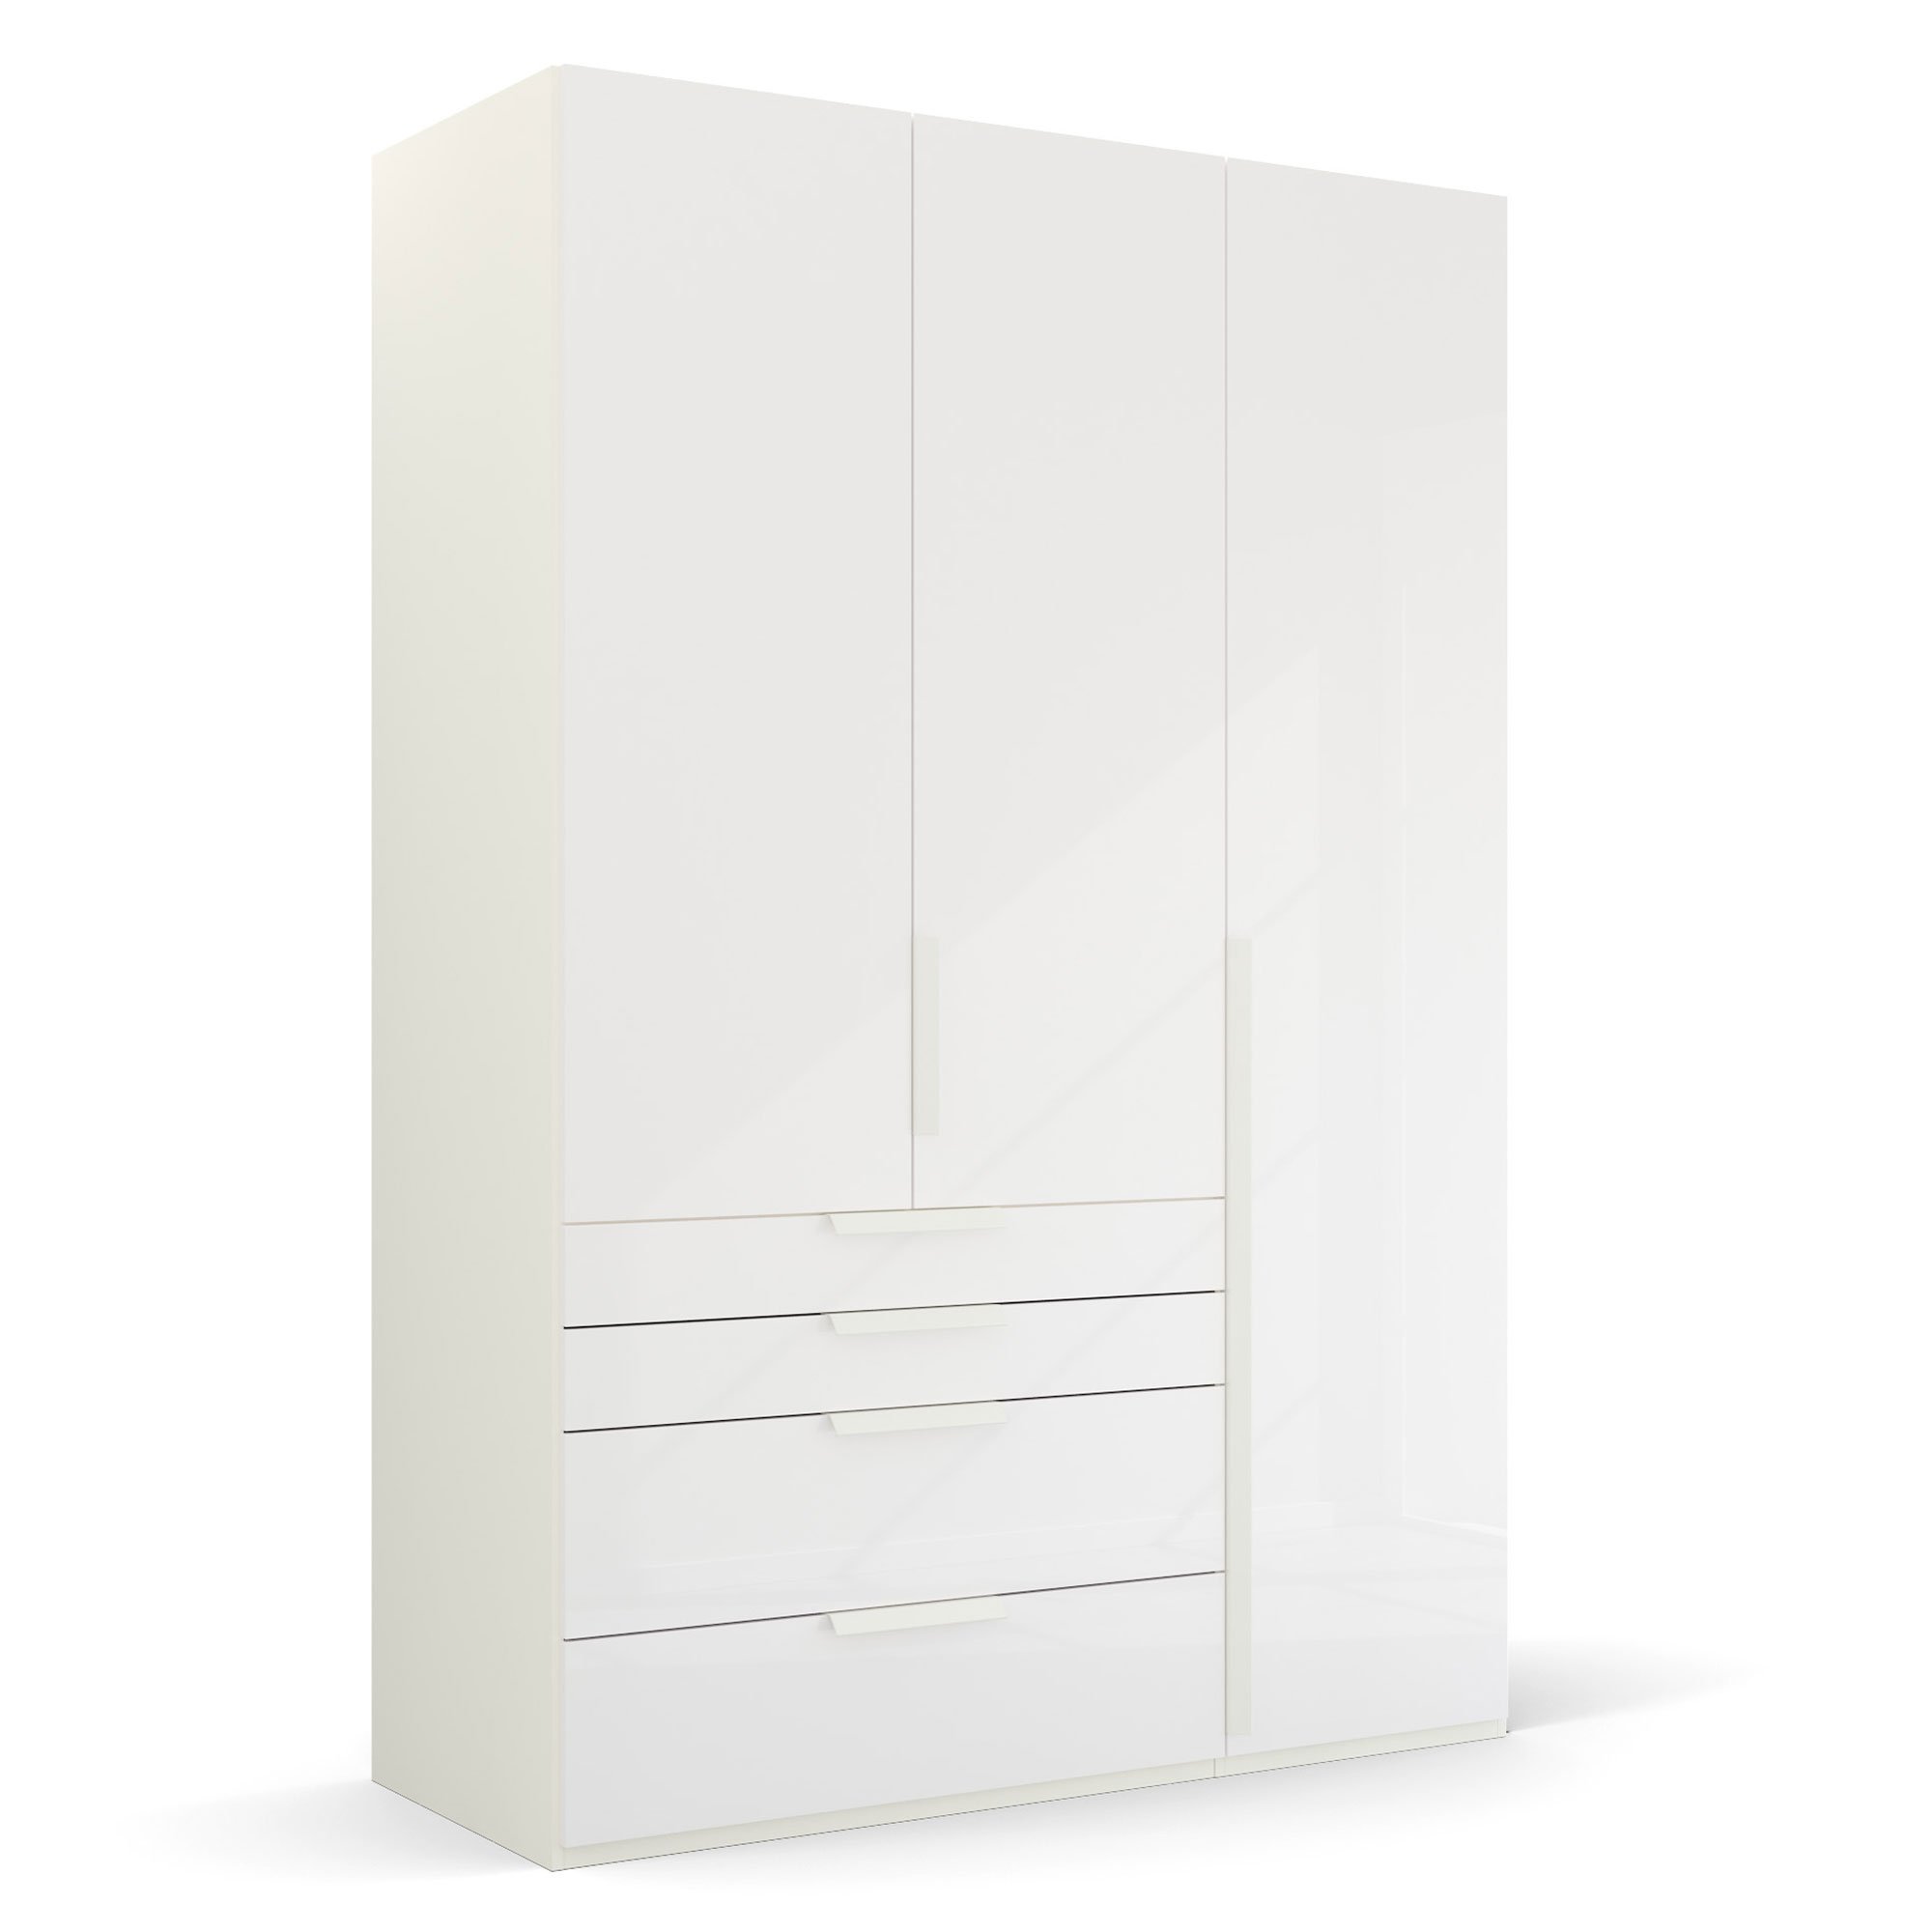 Frans 3 Door 4 Drawer Wardrobe 151cm, White | Barker & Stonehouse